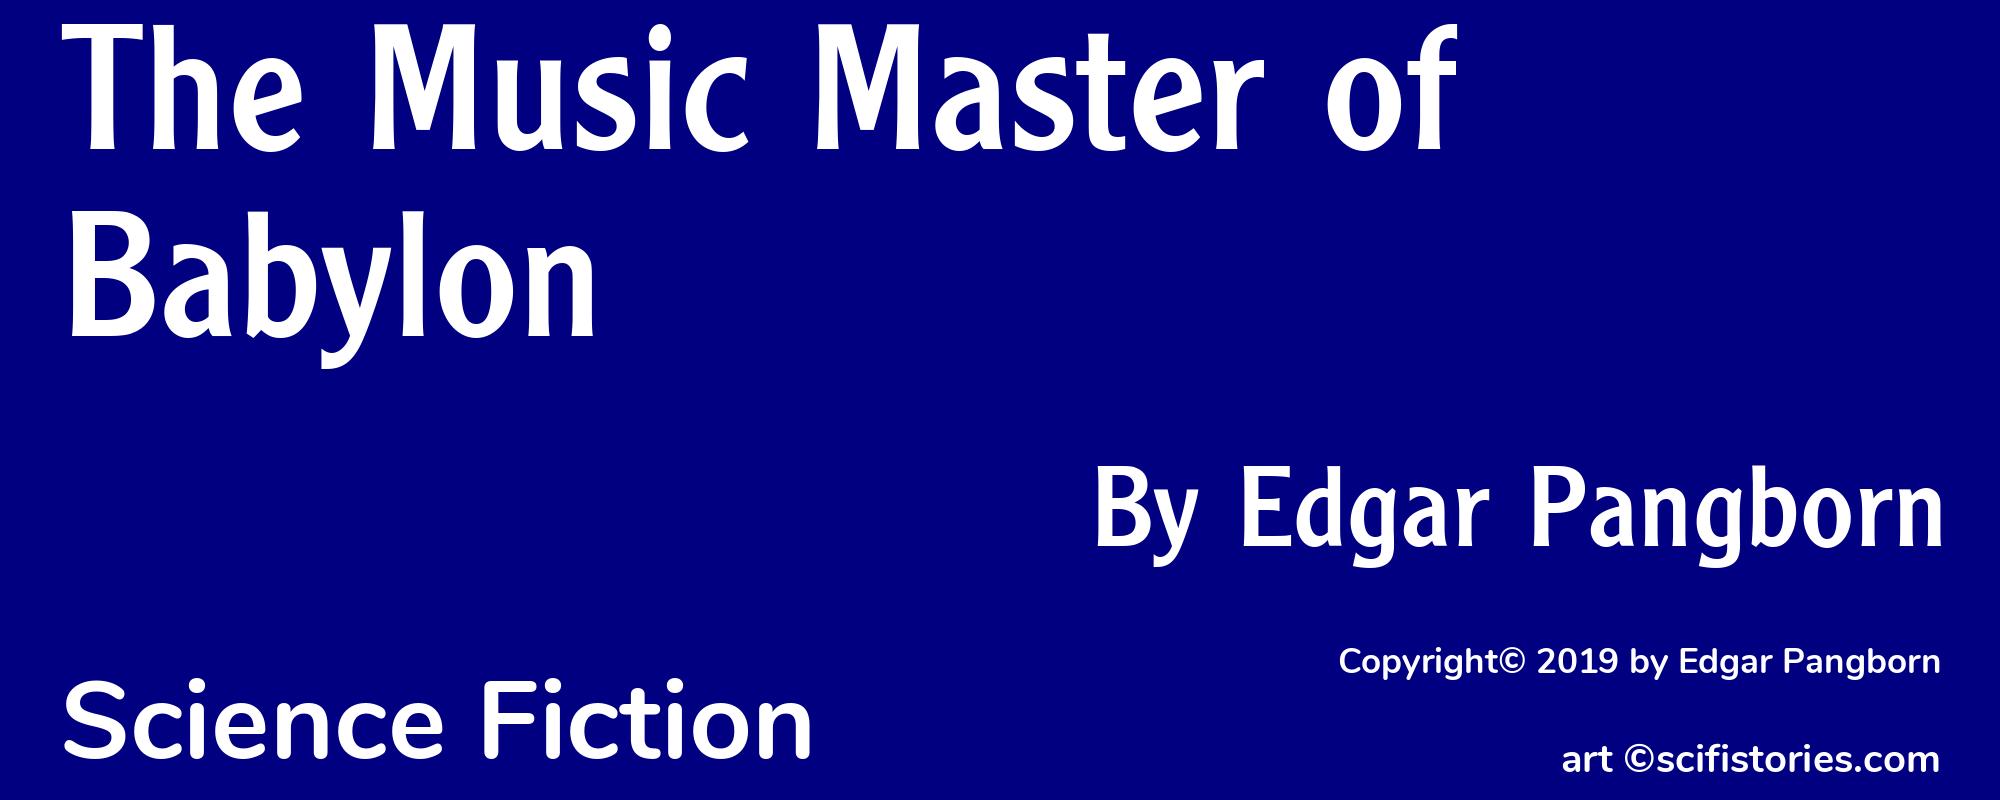 The Music Master of Babylon - Cover